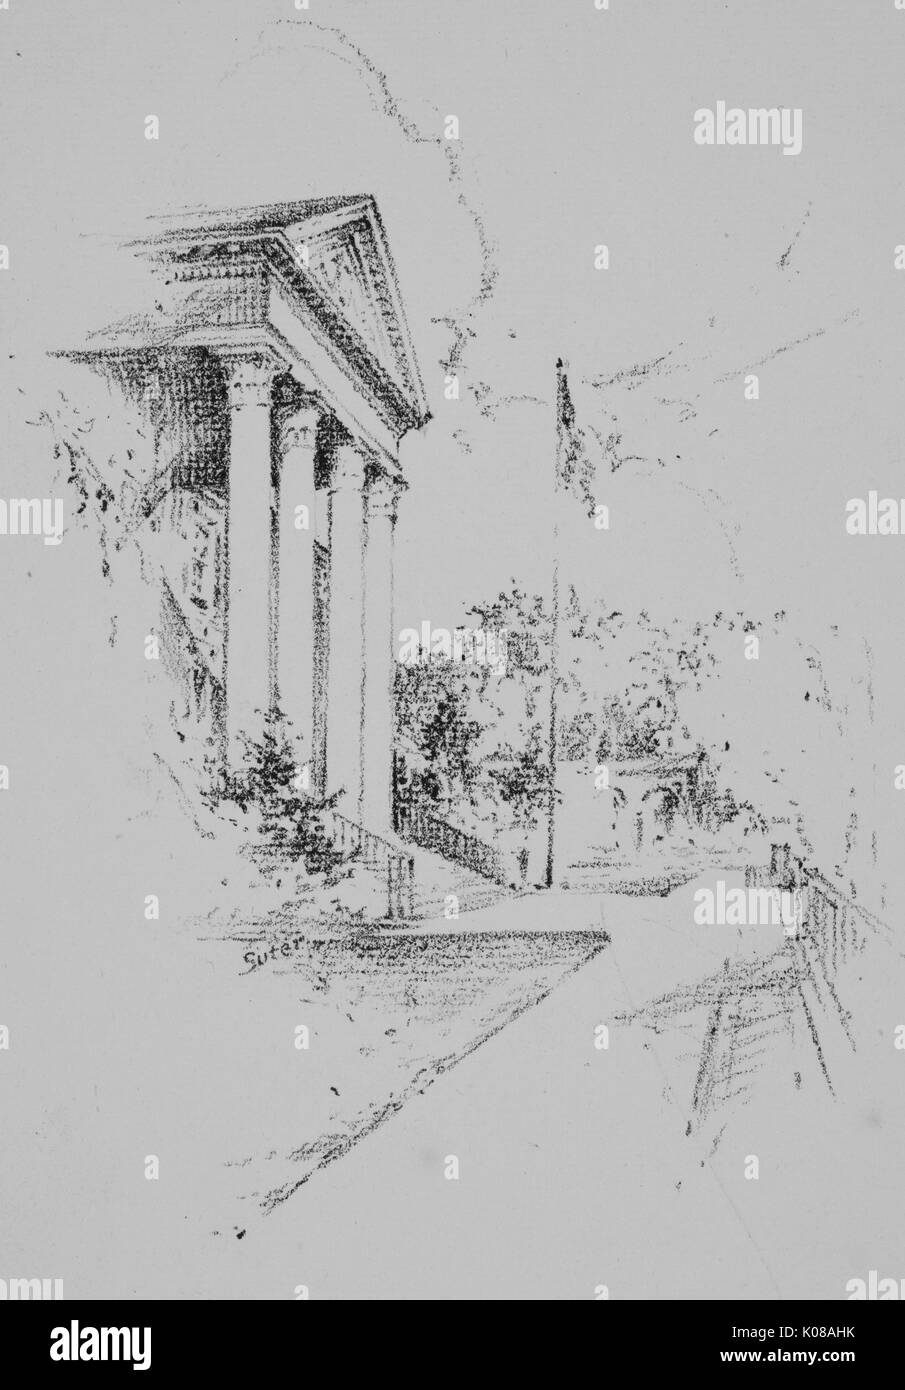 Foto des Äußeren von Gilman Hall auf dem Homewood Campus von der Johns Hopkins University in Baltimore, Maryland, Architektur, Landschaft und ein Fahnenmast, 1870. Stockfoto